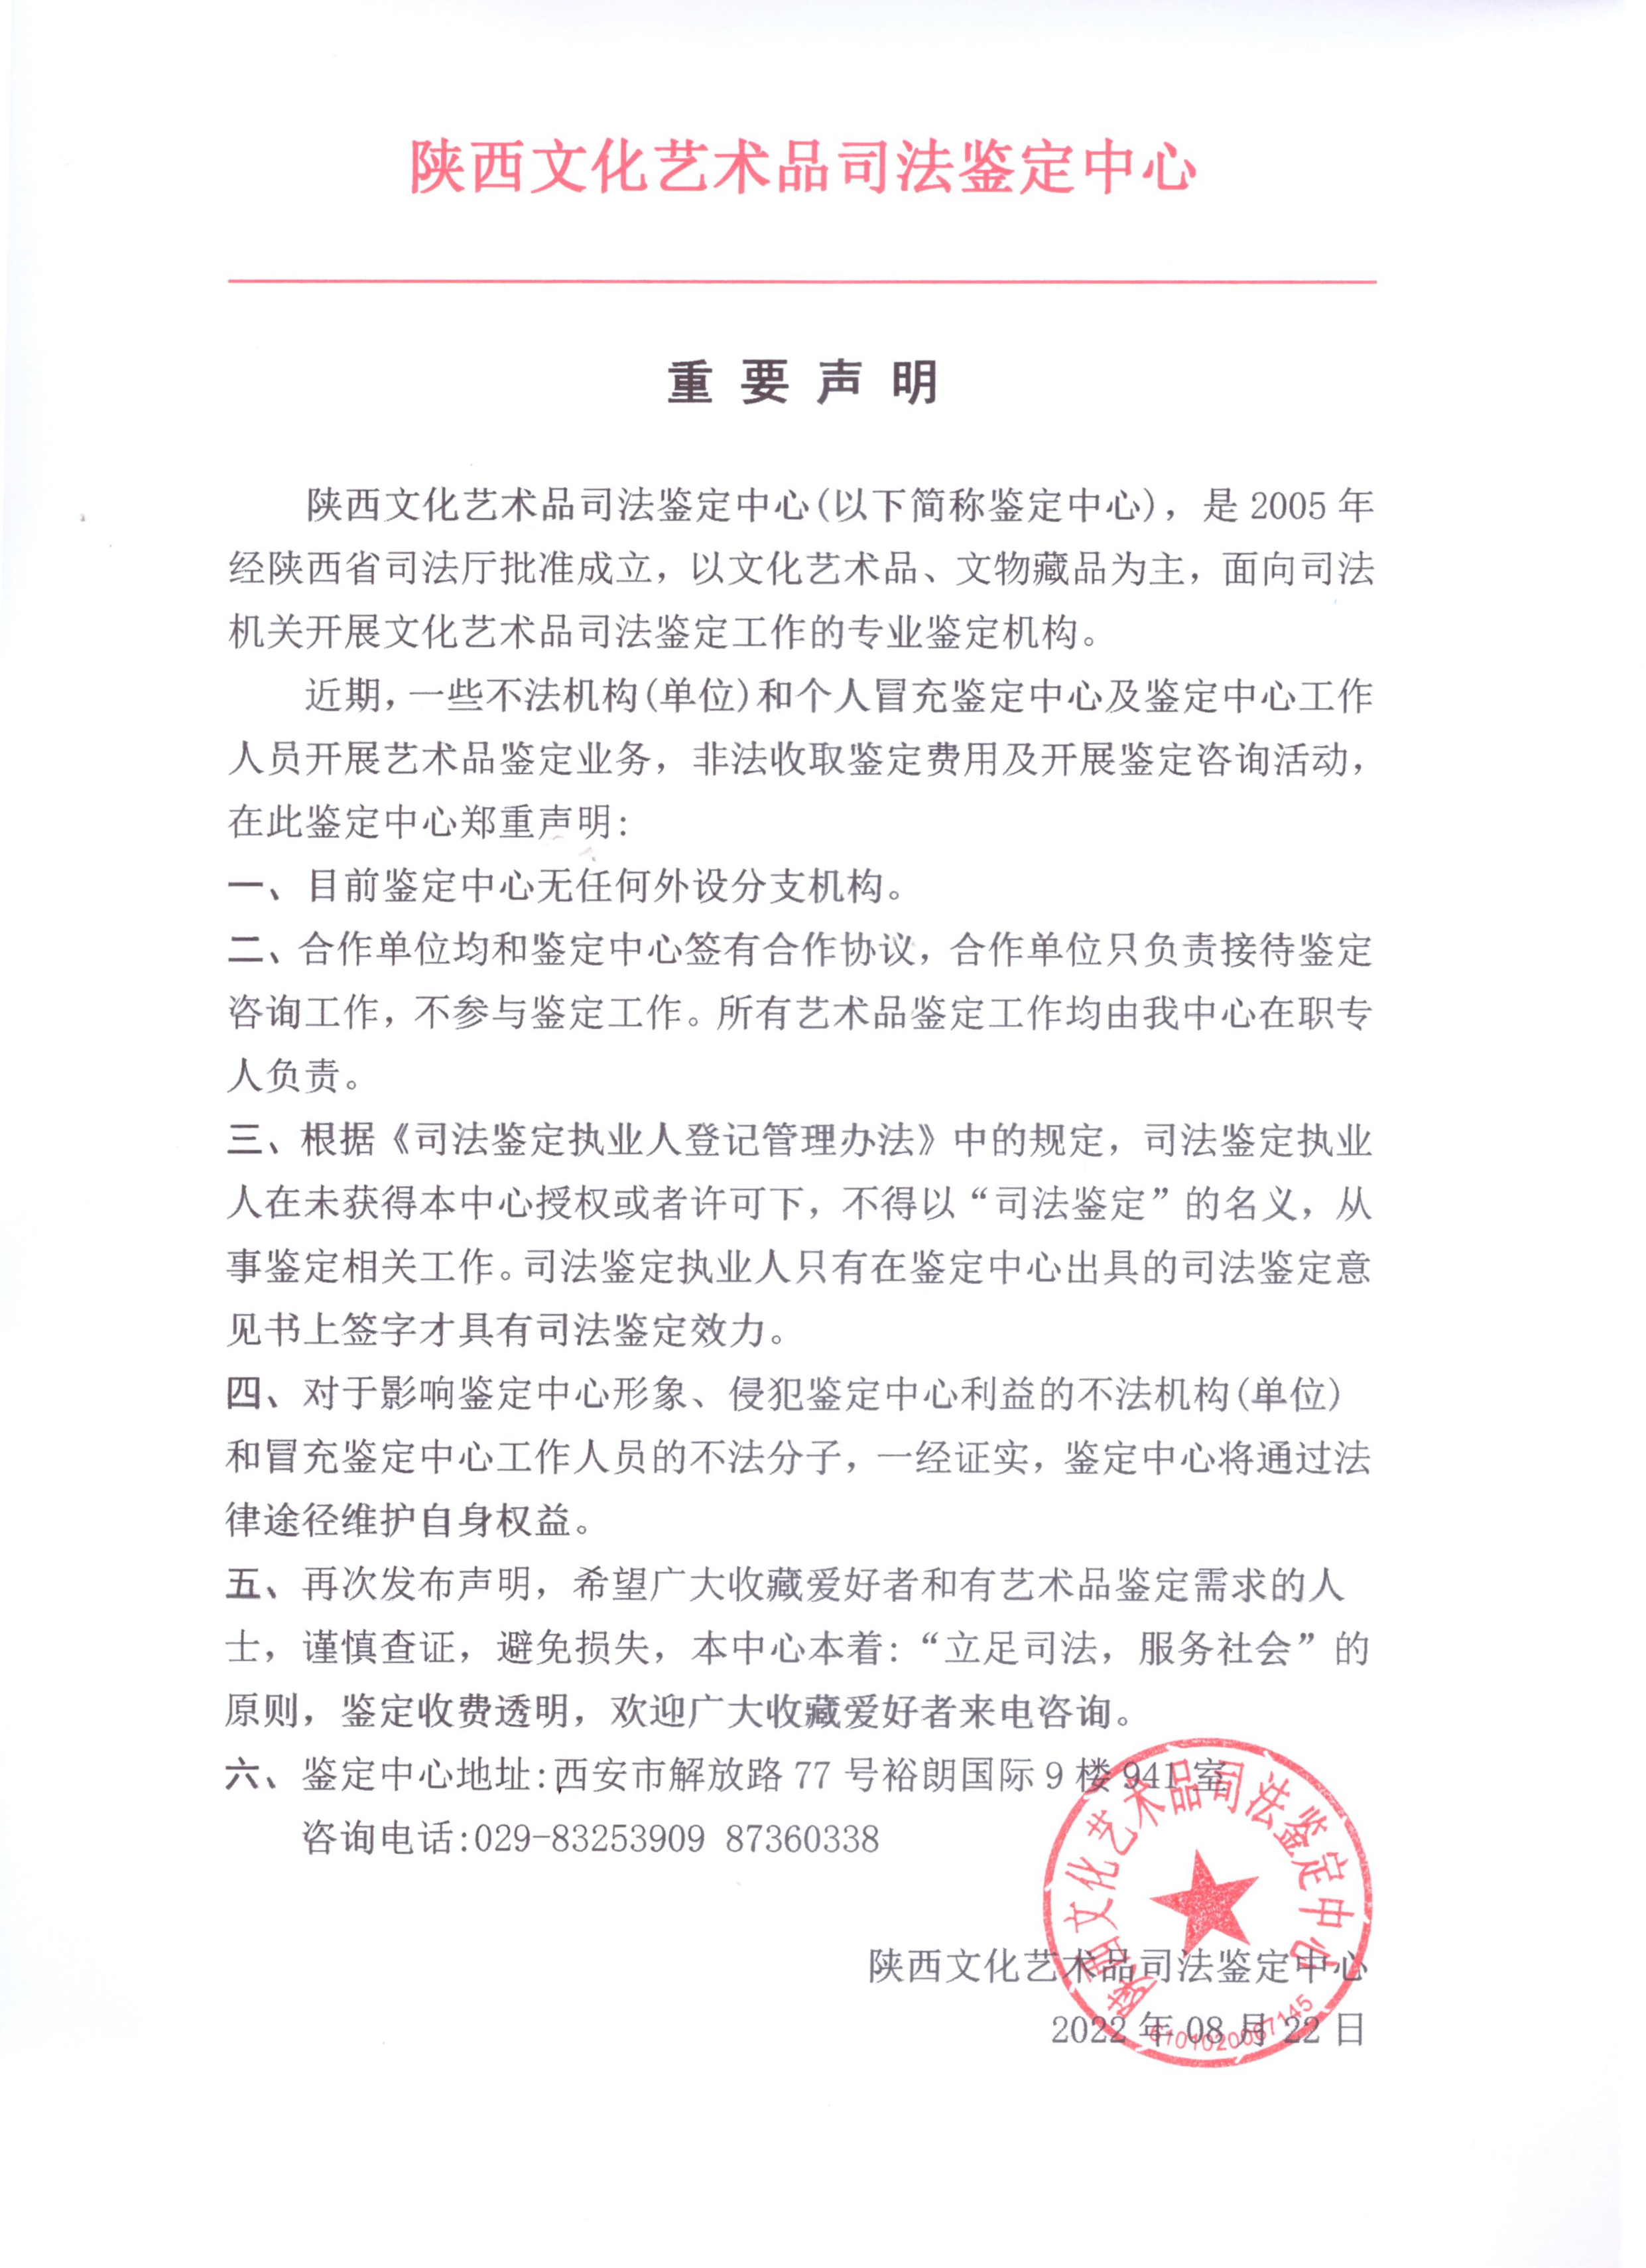  2022年8月22日陕西文化艺术品司法鉴定中心重要声明